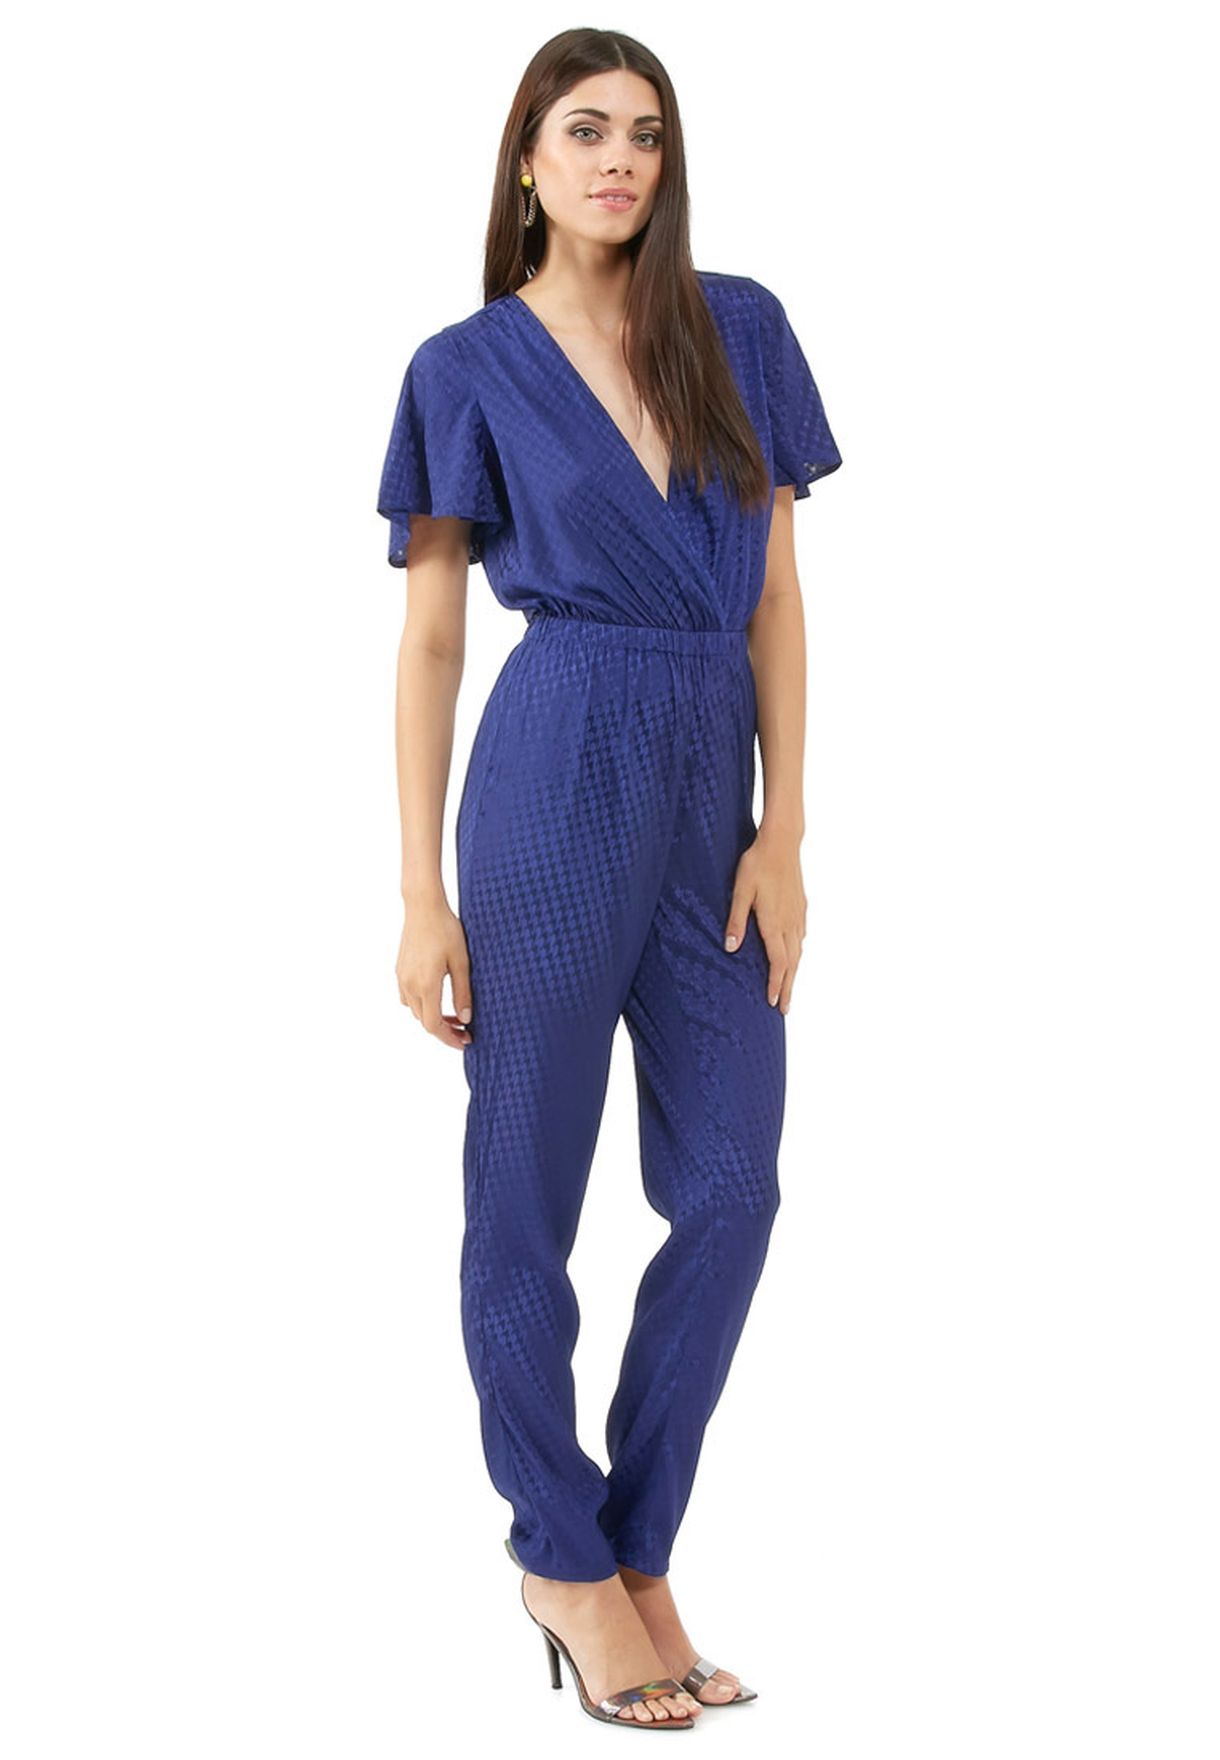 Buy Blue Jumpsuit For Women In Mena Worldwide